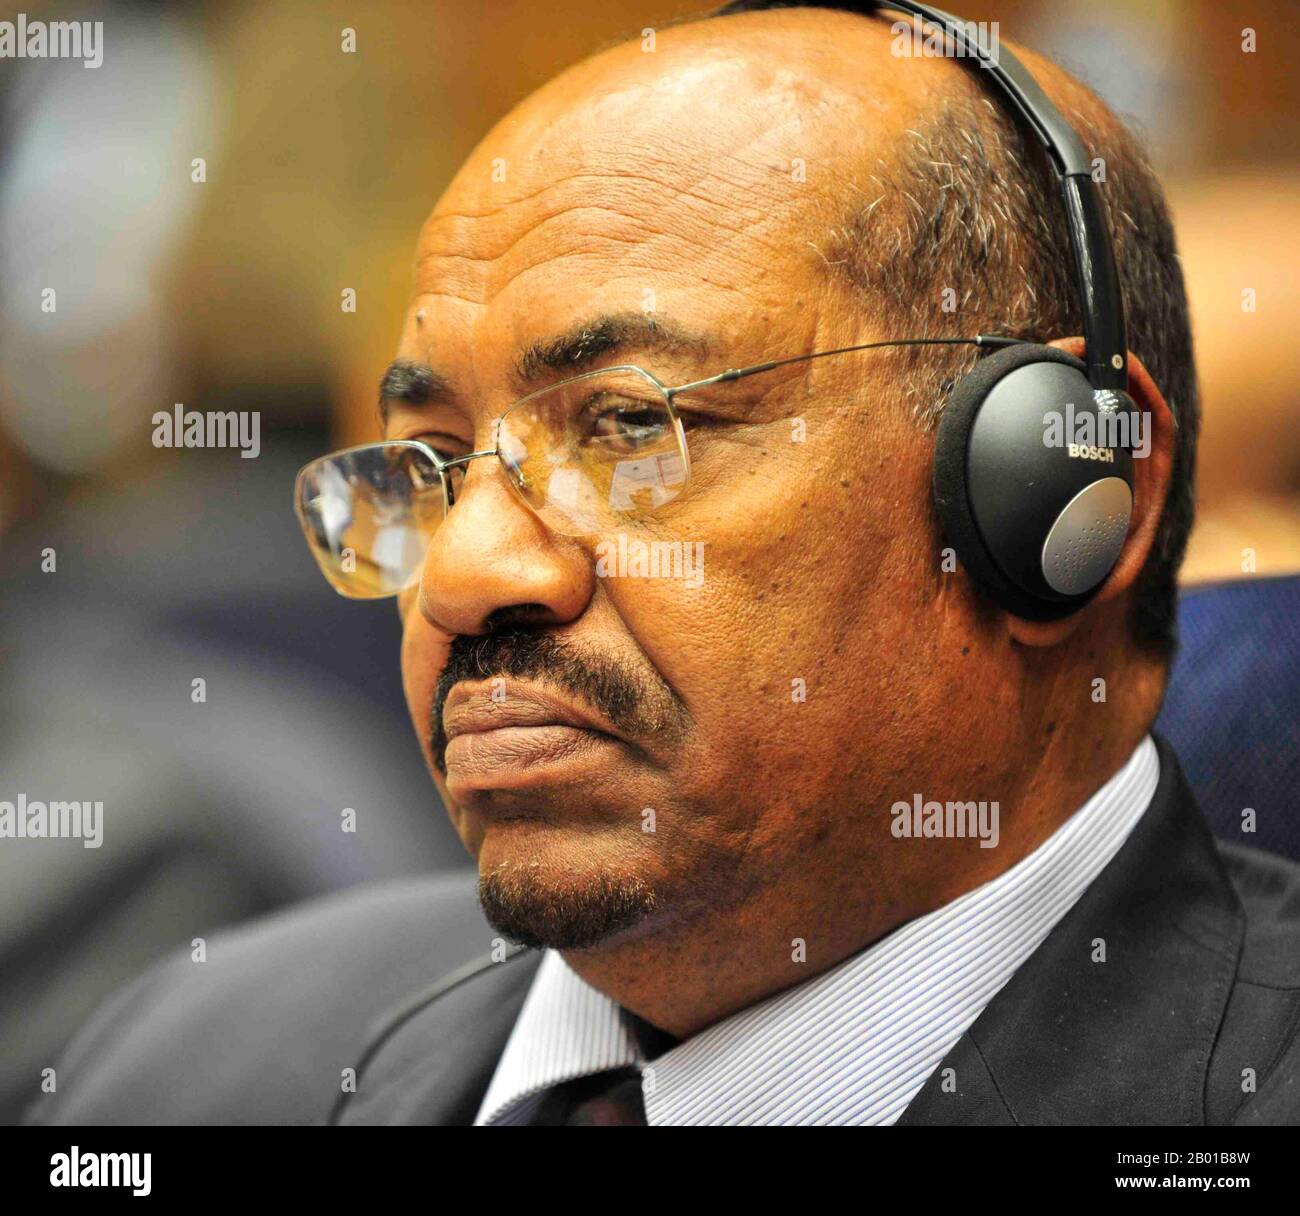 Sudan: Omar Hassan Ahmad al-Bashir, Presidente del Sudan (1 gennaio 1989). Foto di Jesse B. Awalt (di pubblico dominio), Addis Abeba, 31 gennaio 2009. Il maresciallo di campo Omar Hassan Ahmad al-Bashir è l'ex presidente del Sudan che ha servito come settimo capo di stato del Sudan con vari titoli dal 1989 fino a quando è stato desposto in un colpo di stato nel 2019. Salì al potere nel 1989 quando guidò un gruppo di ufficiali in un colpo di stato senza sangue che estirse il governo del primo ministro Sadiq al-Mahdi. Bashir è il primo capo di stato seduto ad essere mai stato accusato dal Tribunale penale internazionale per genocidio. Foto Stock